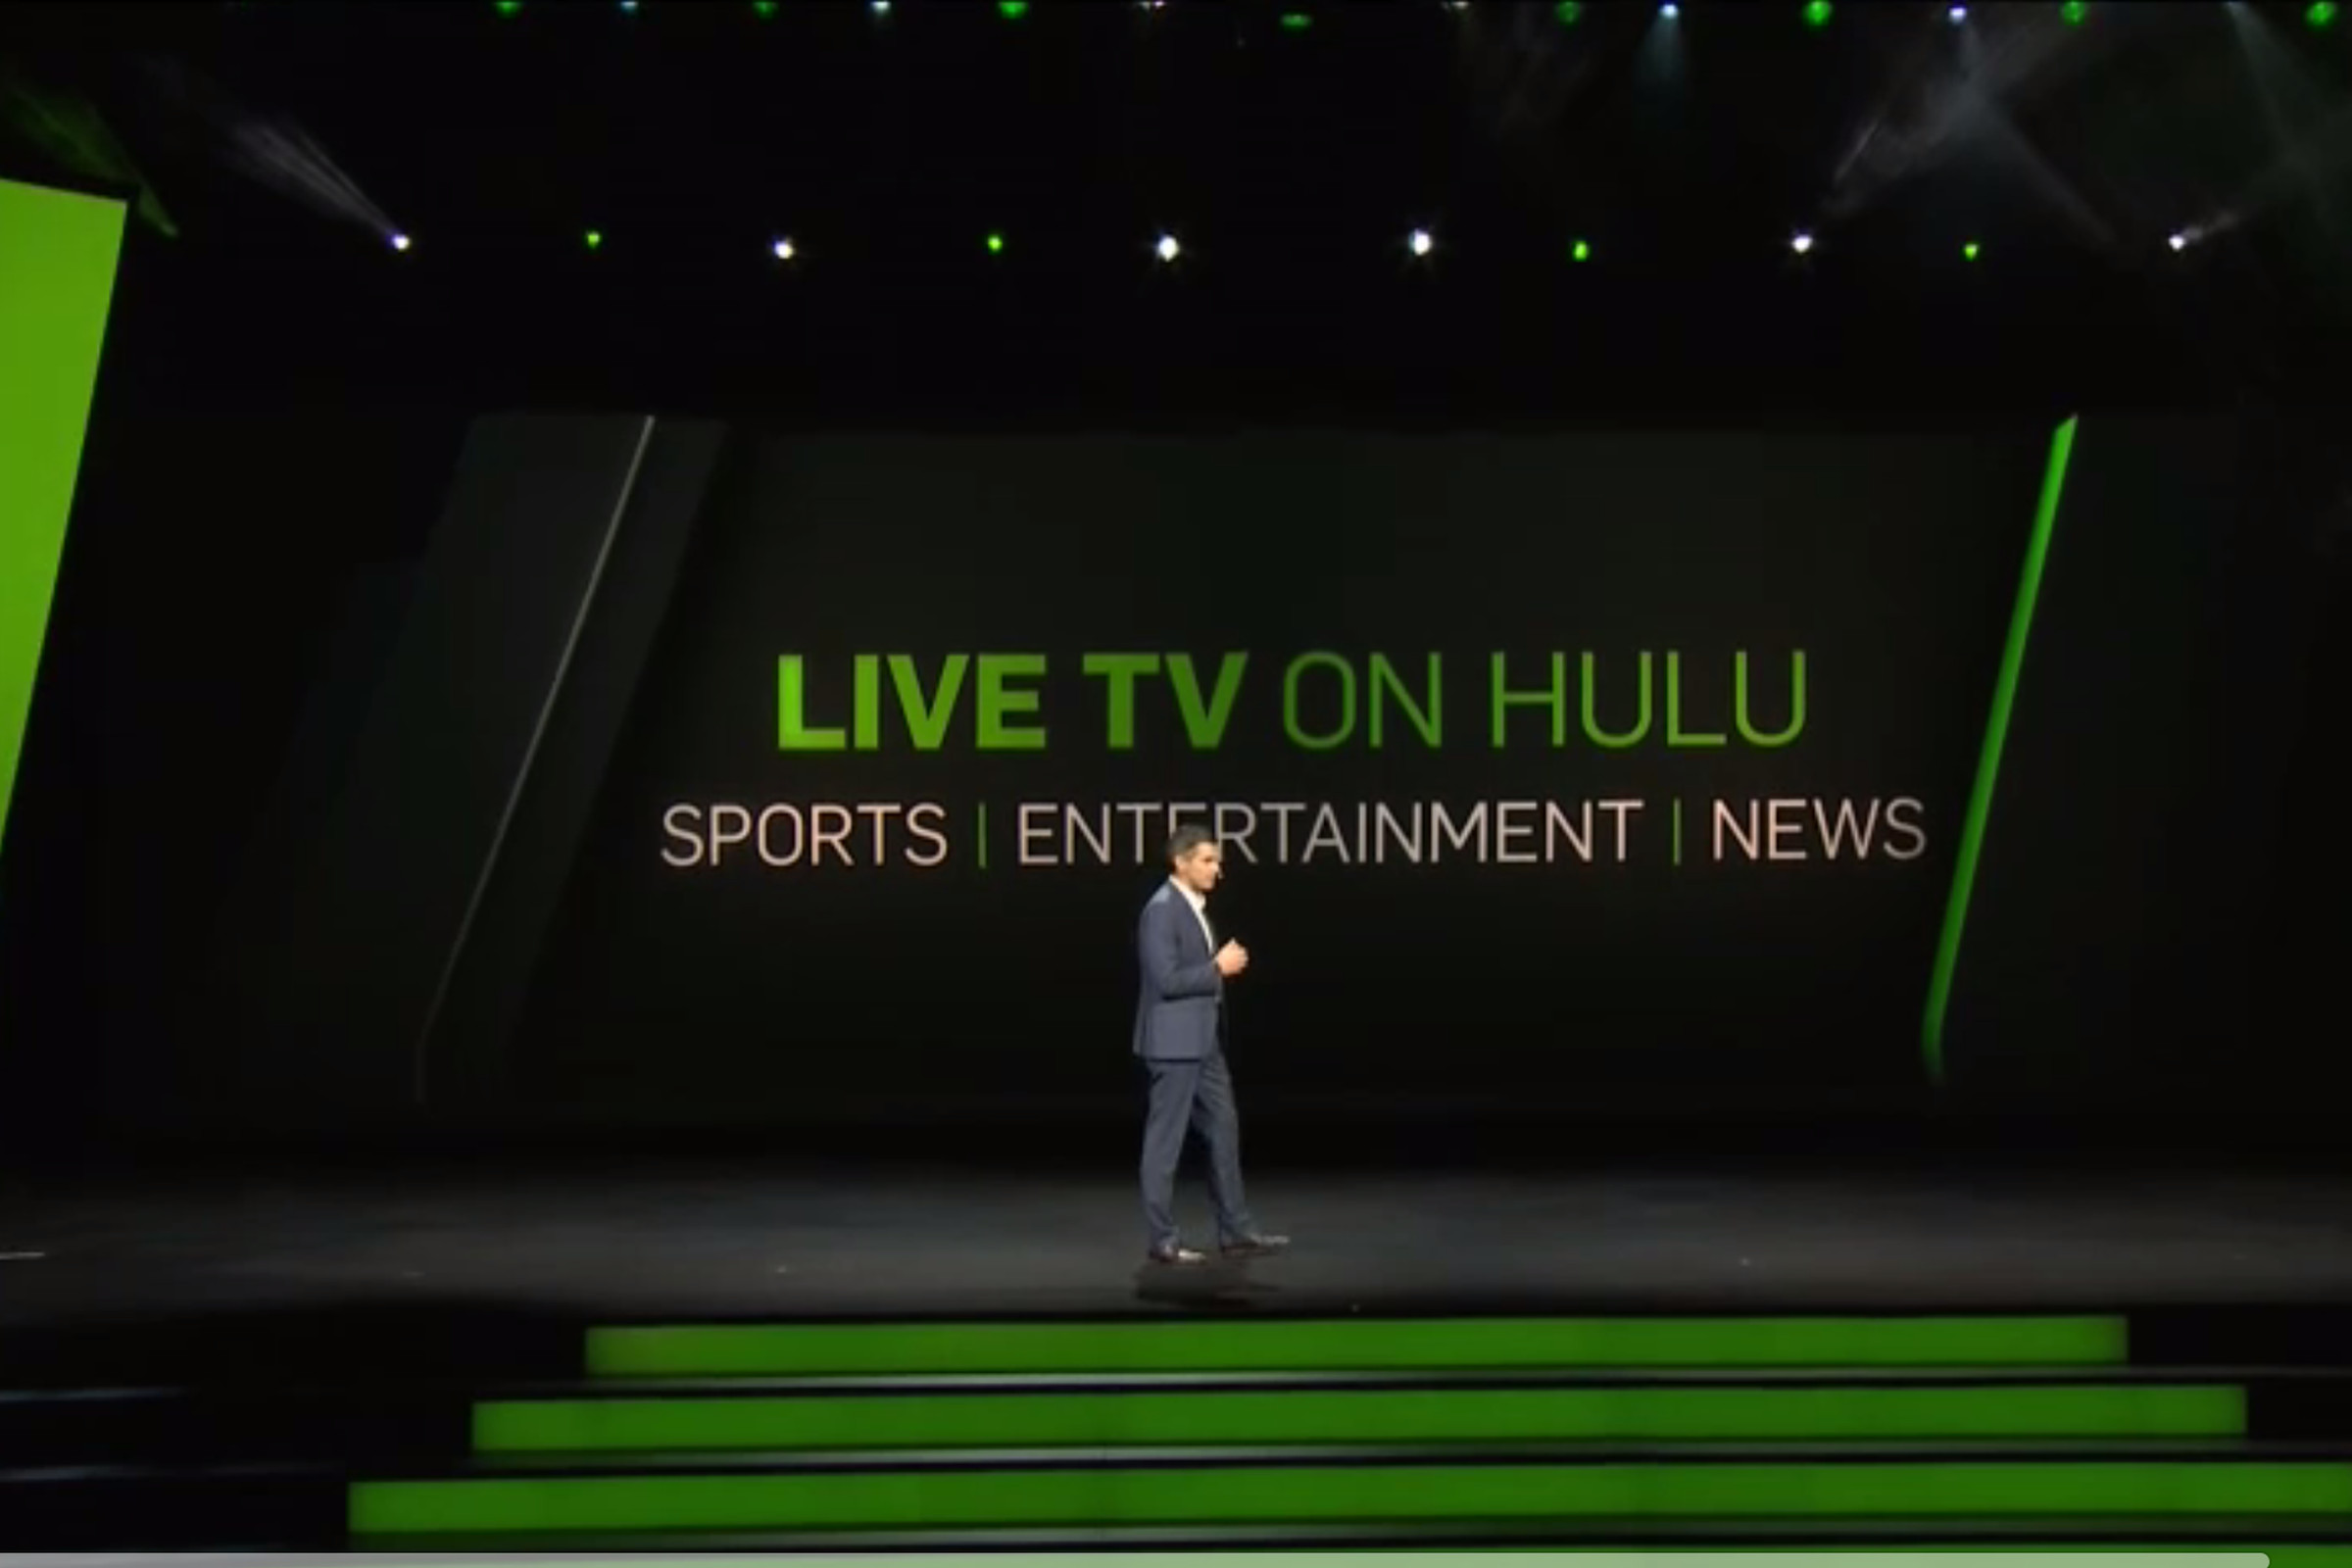 hulu upfront 2016 screenshot-news-Hulu